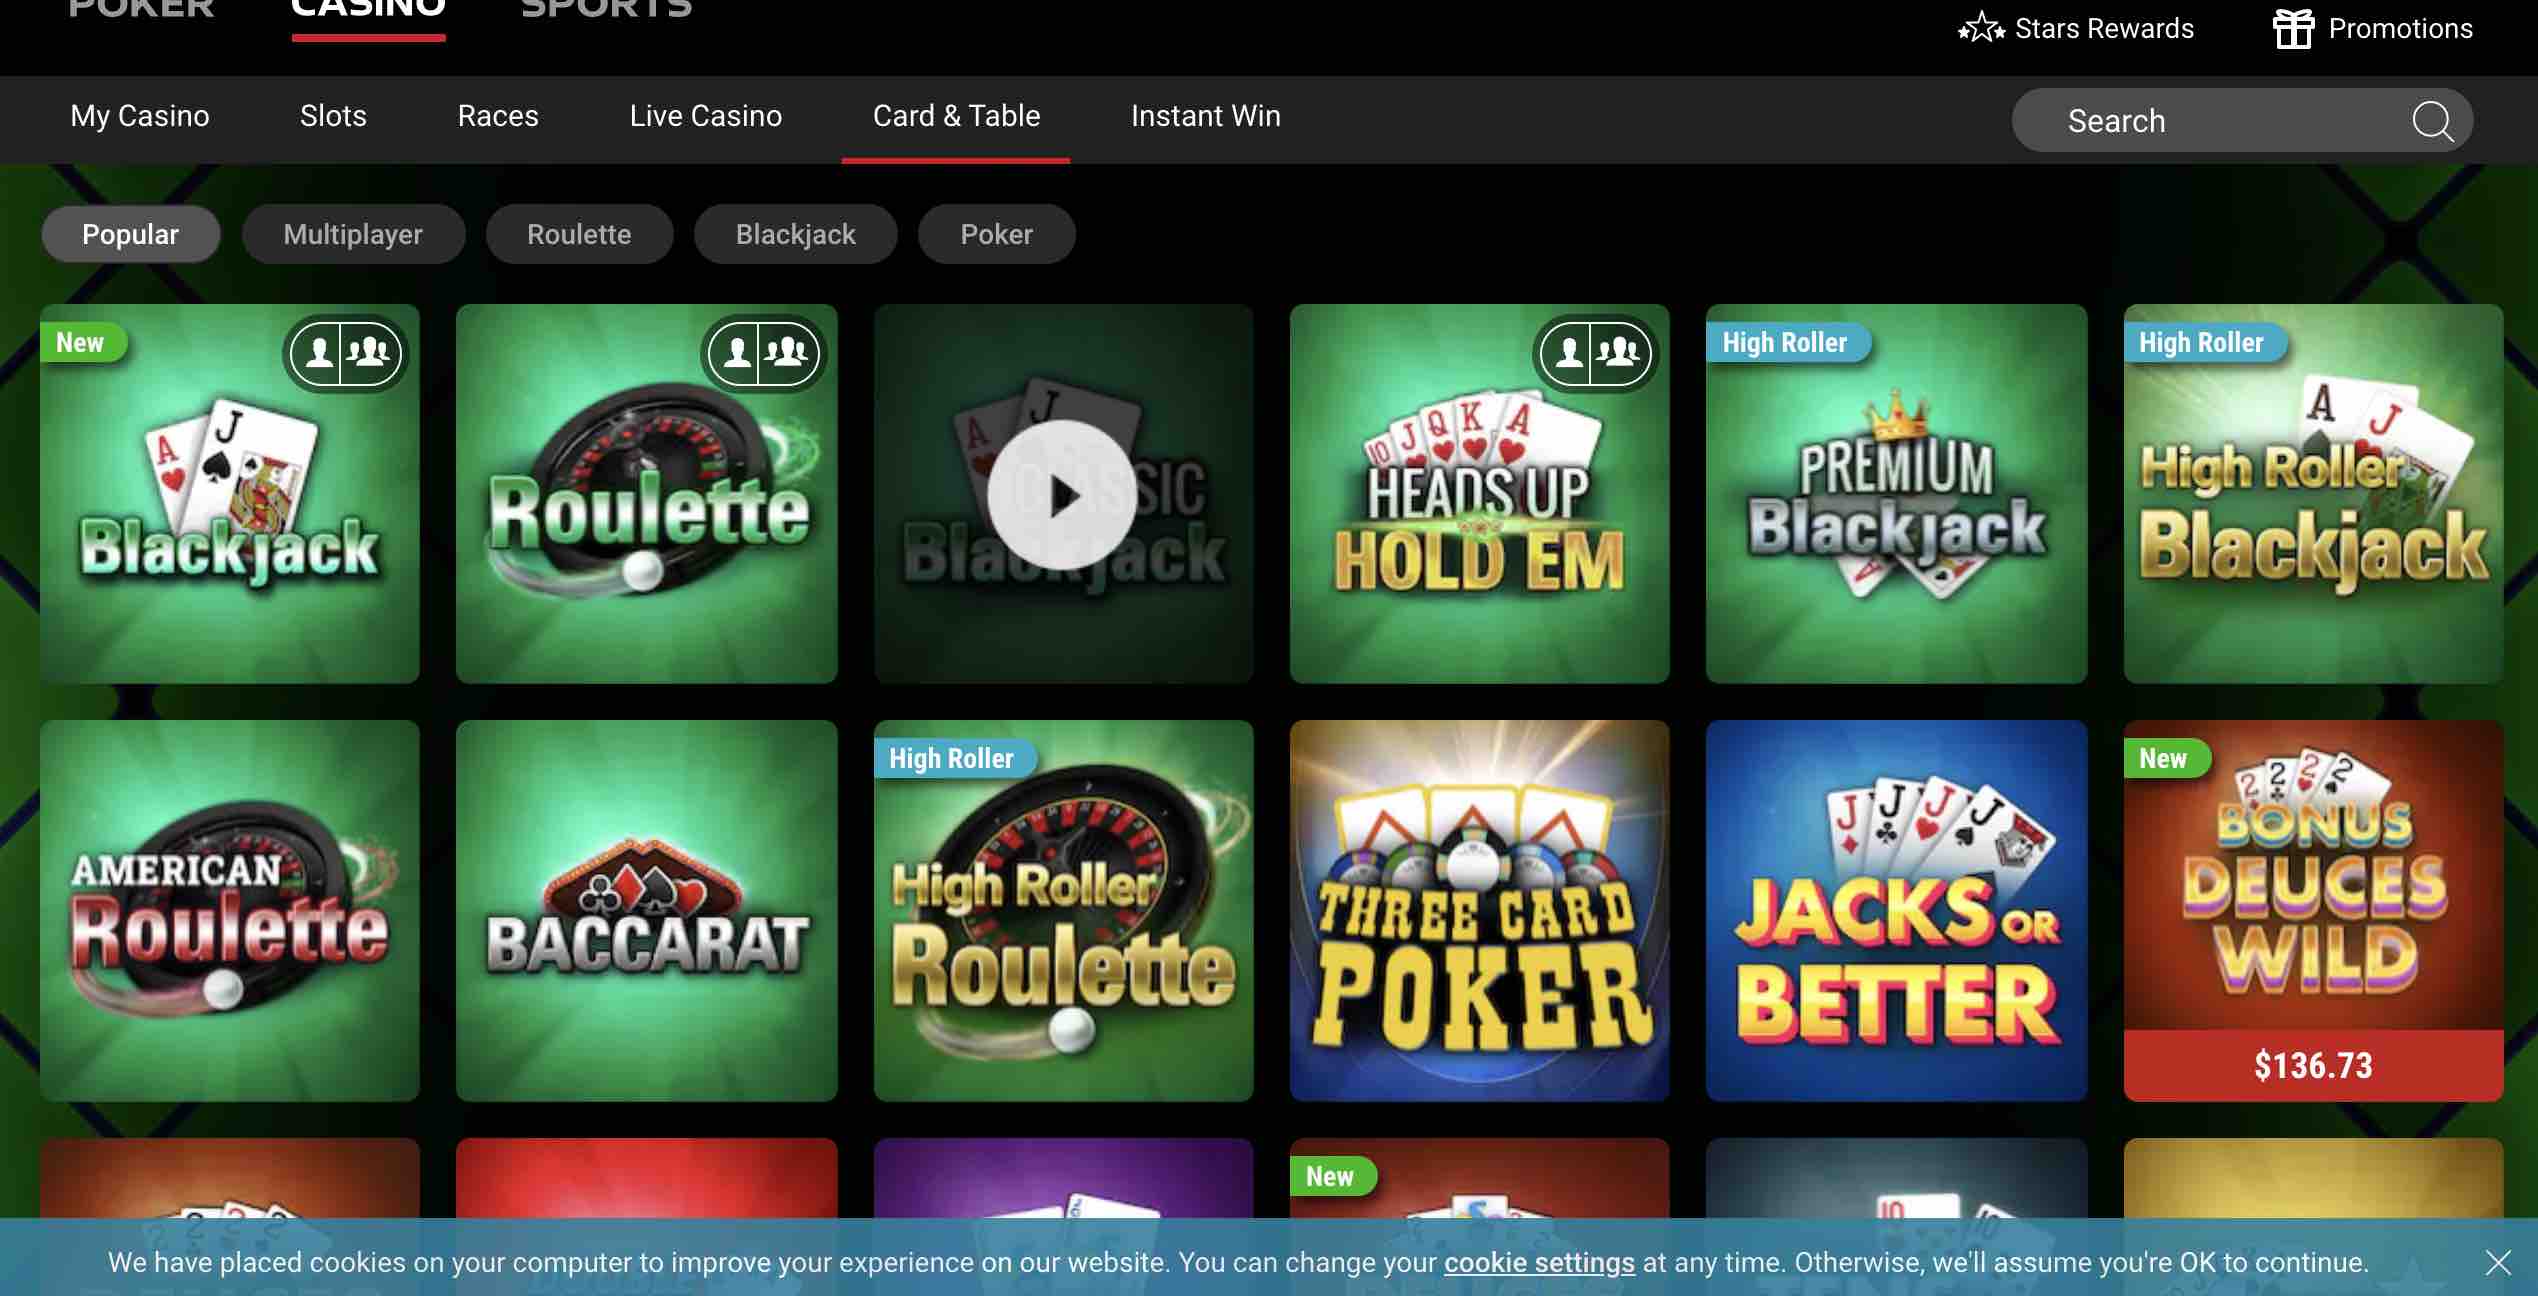 poker stars online casino sign up bonus